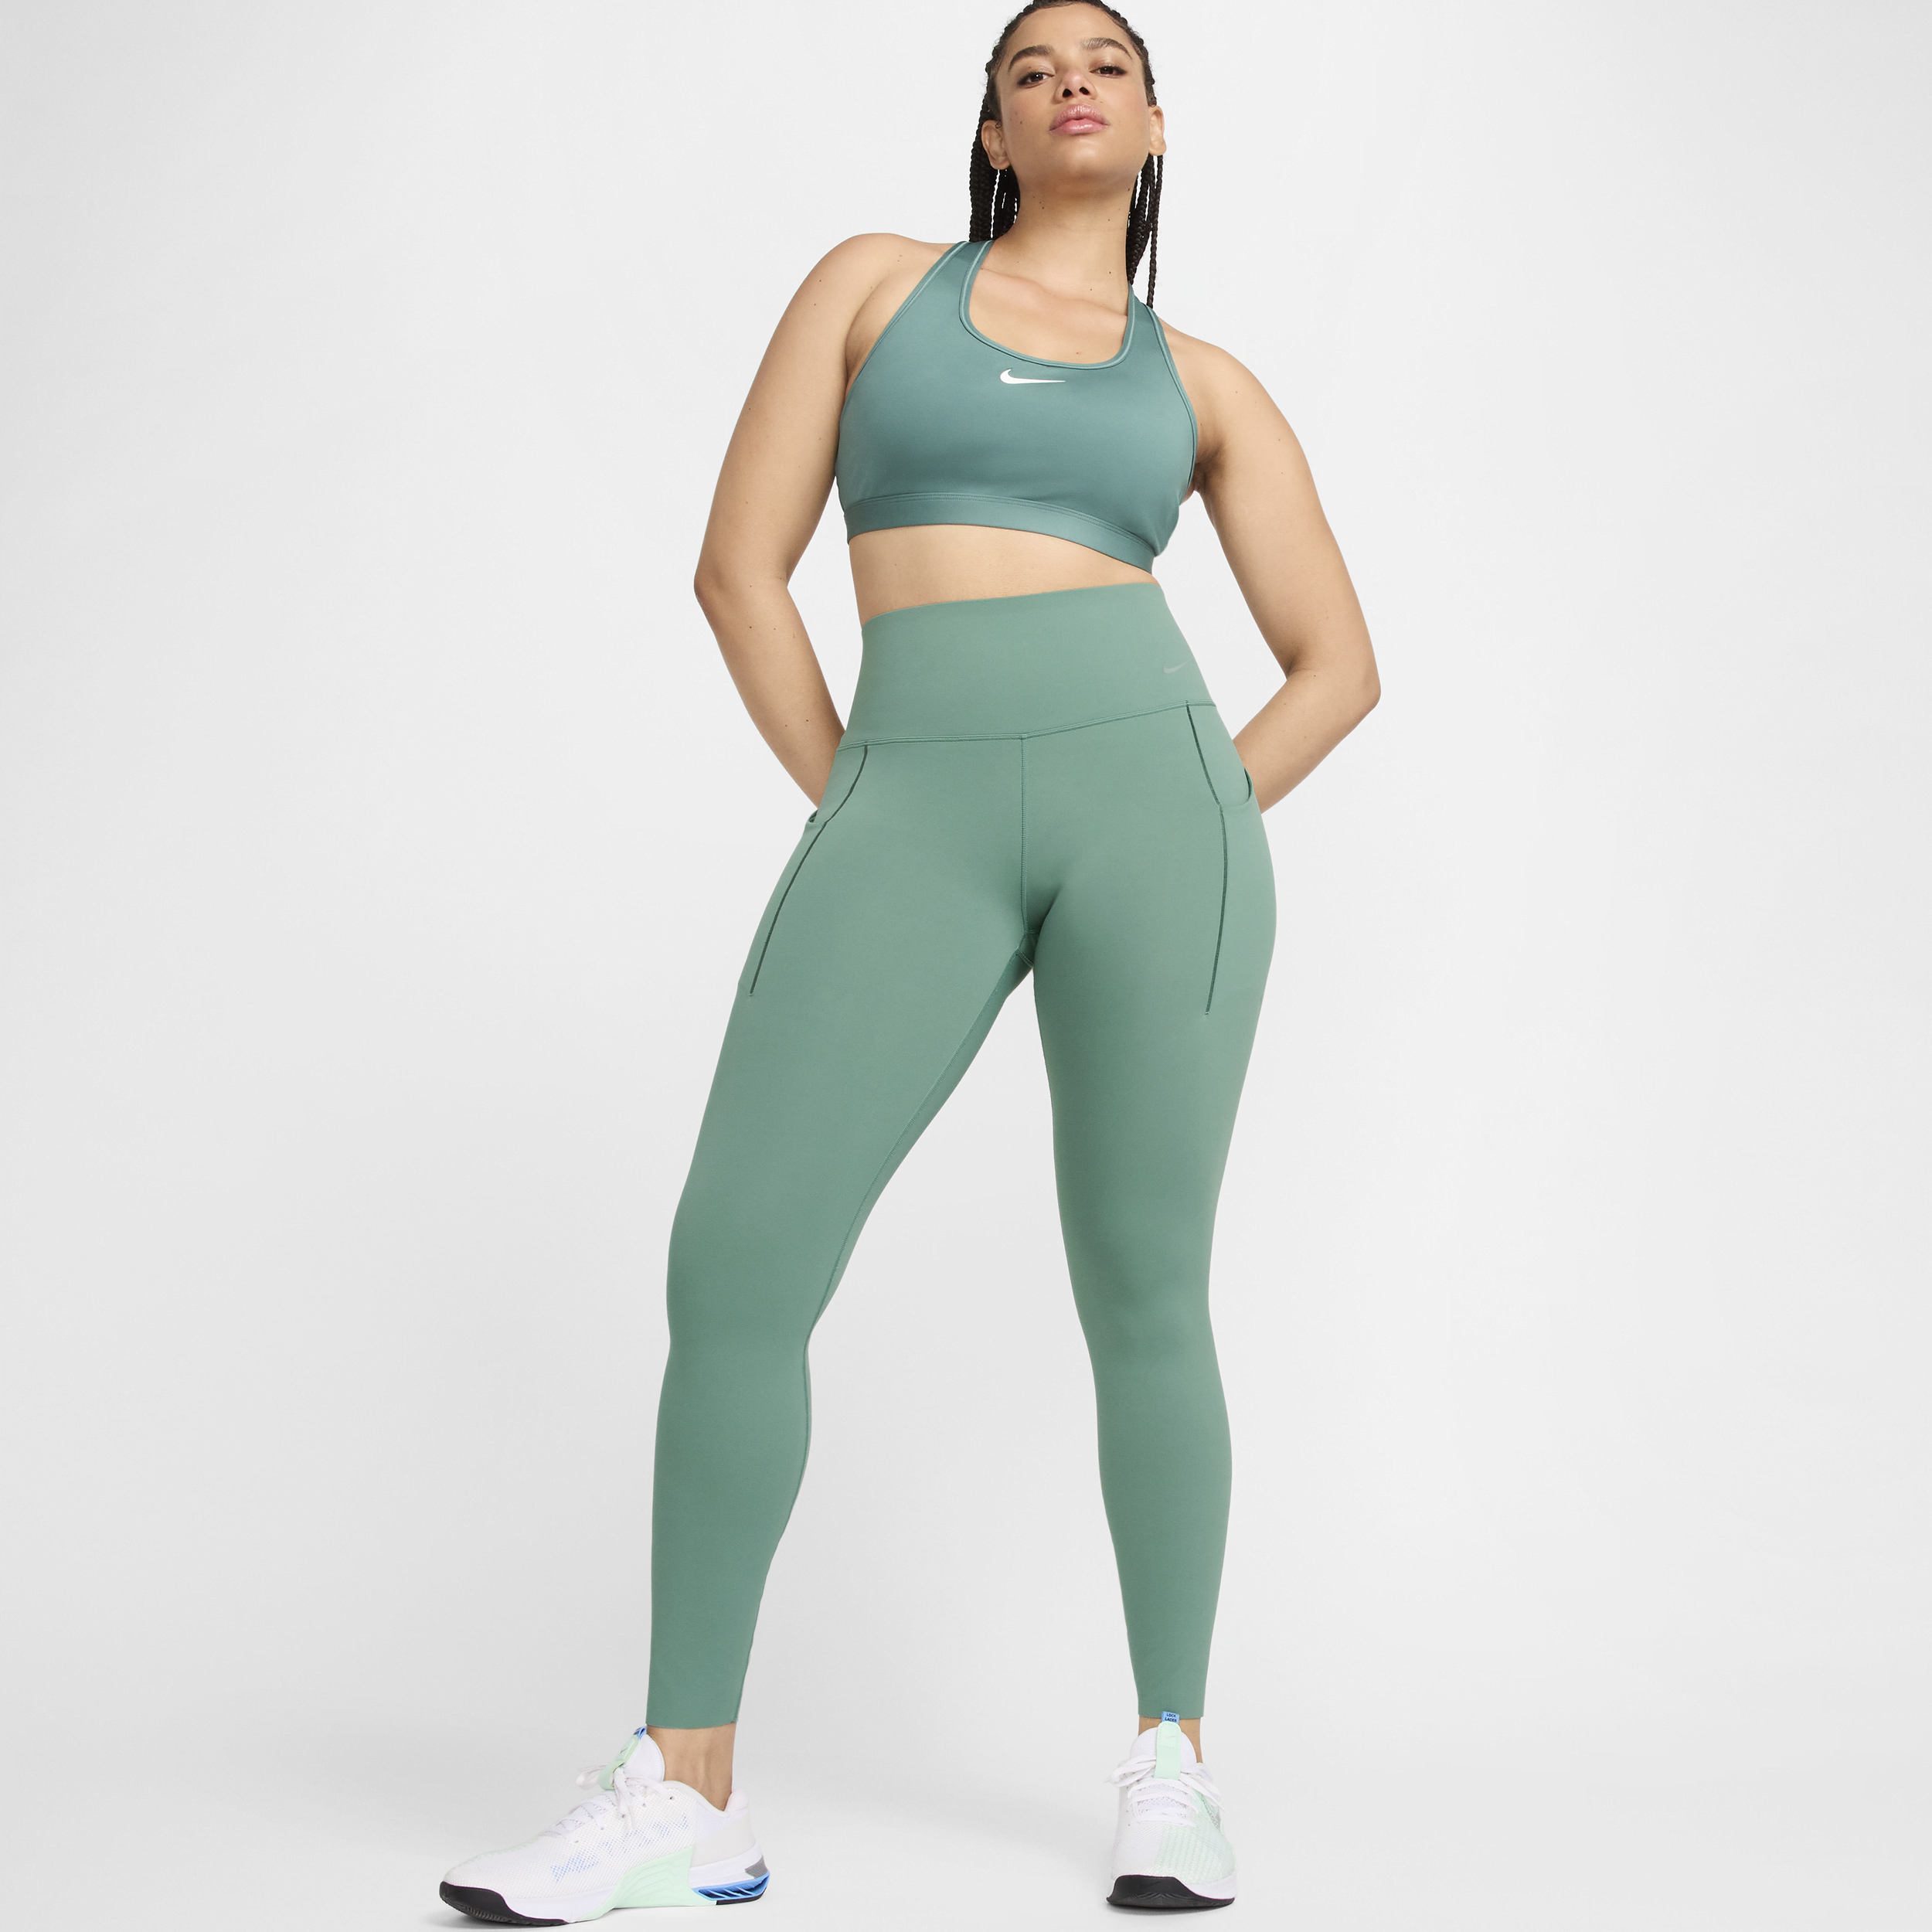 Nike Universa-leggings i fuld længde med medium støtte, høj talje og lommer til kvinder - grøn